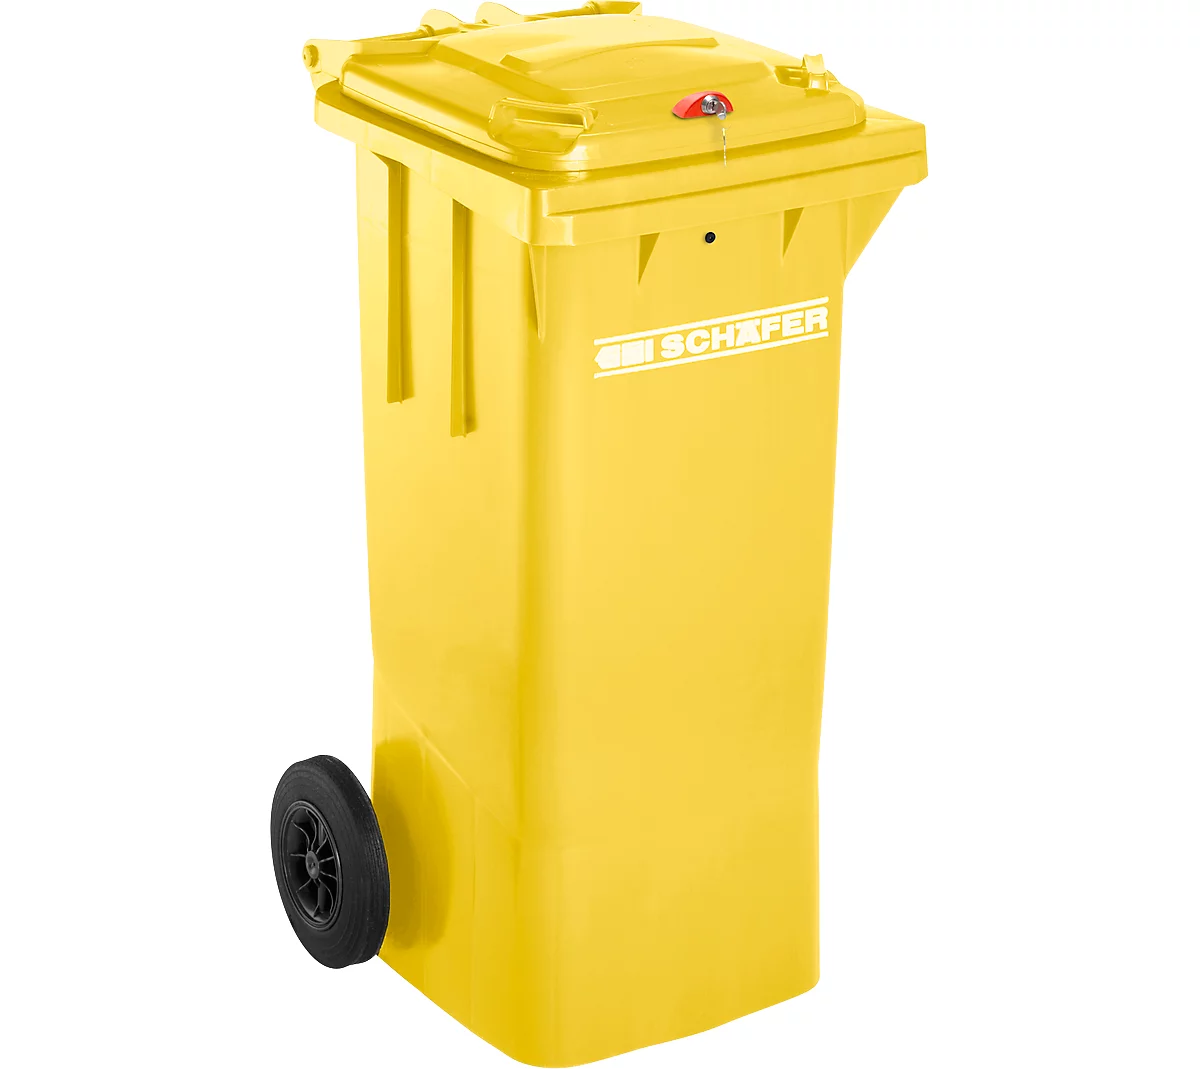 Contenedor de basura GMT, 80 l, cierre por gravedad, amarillo